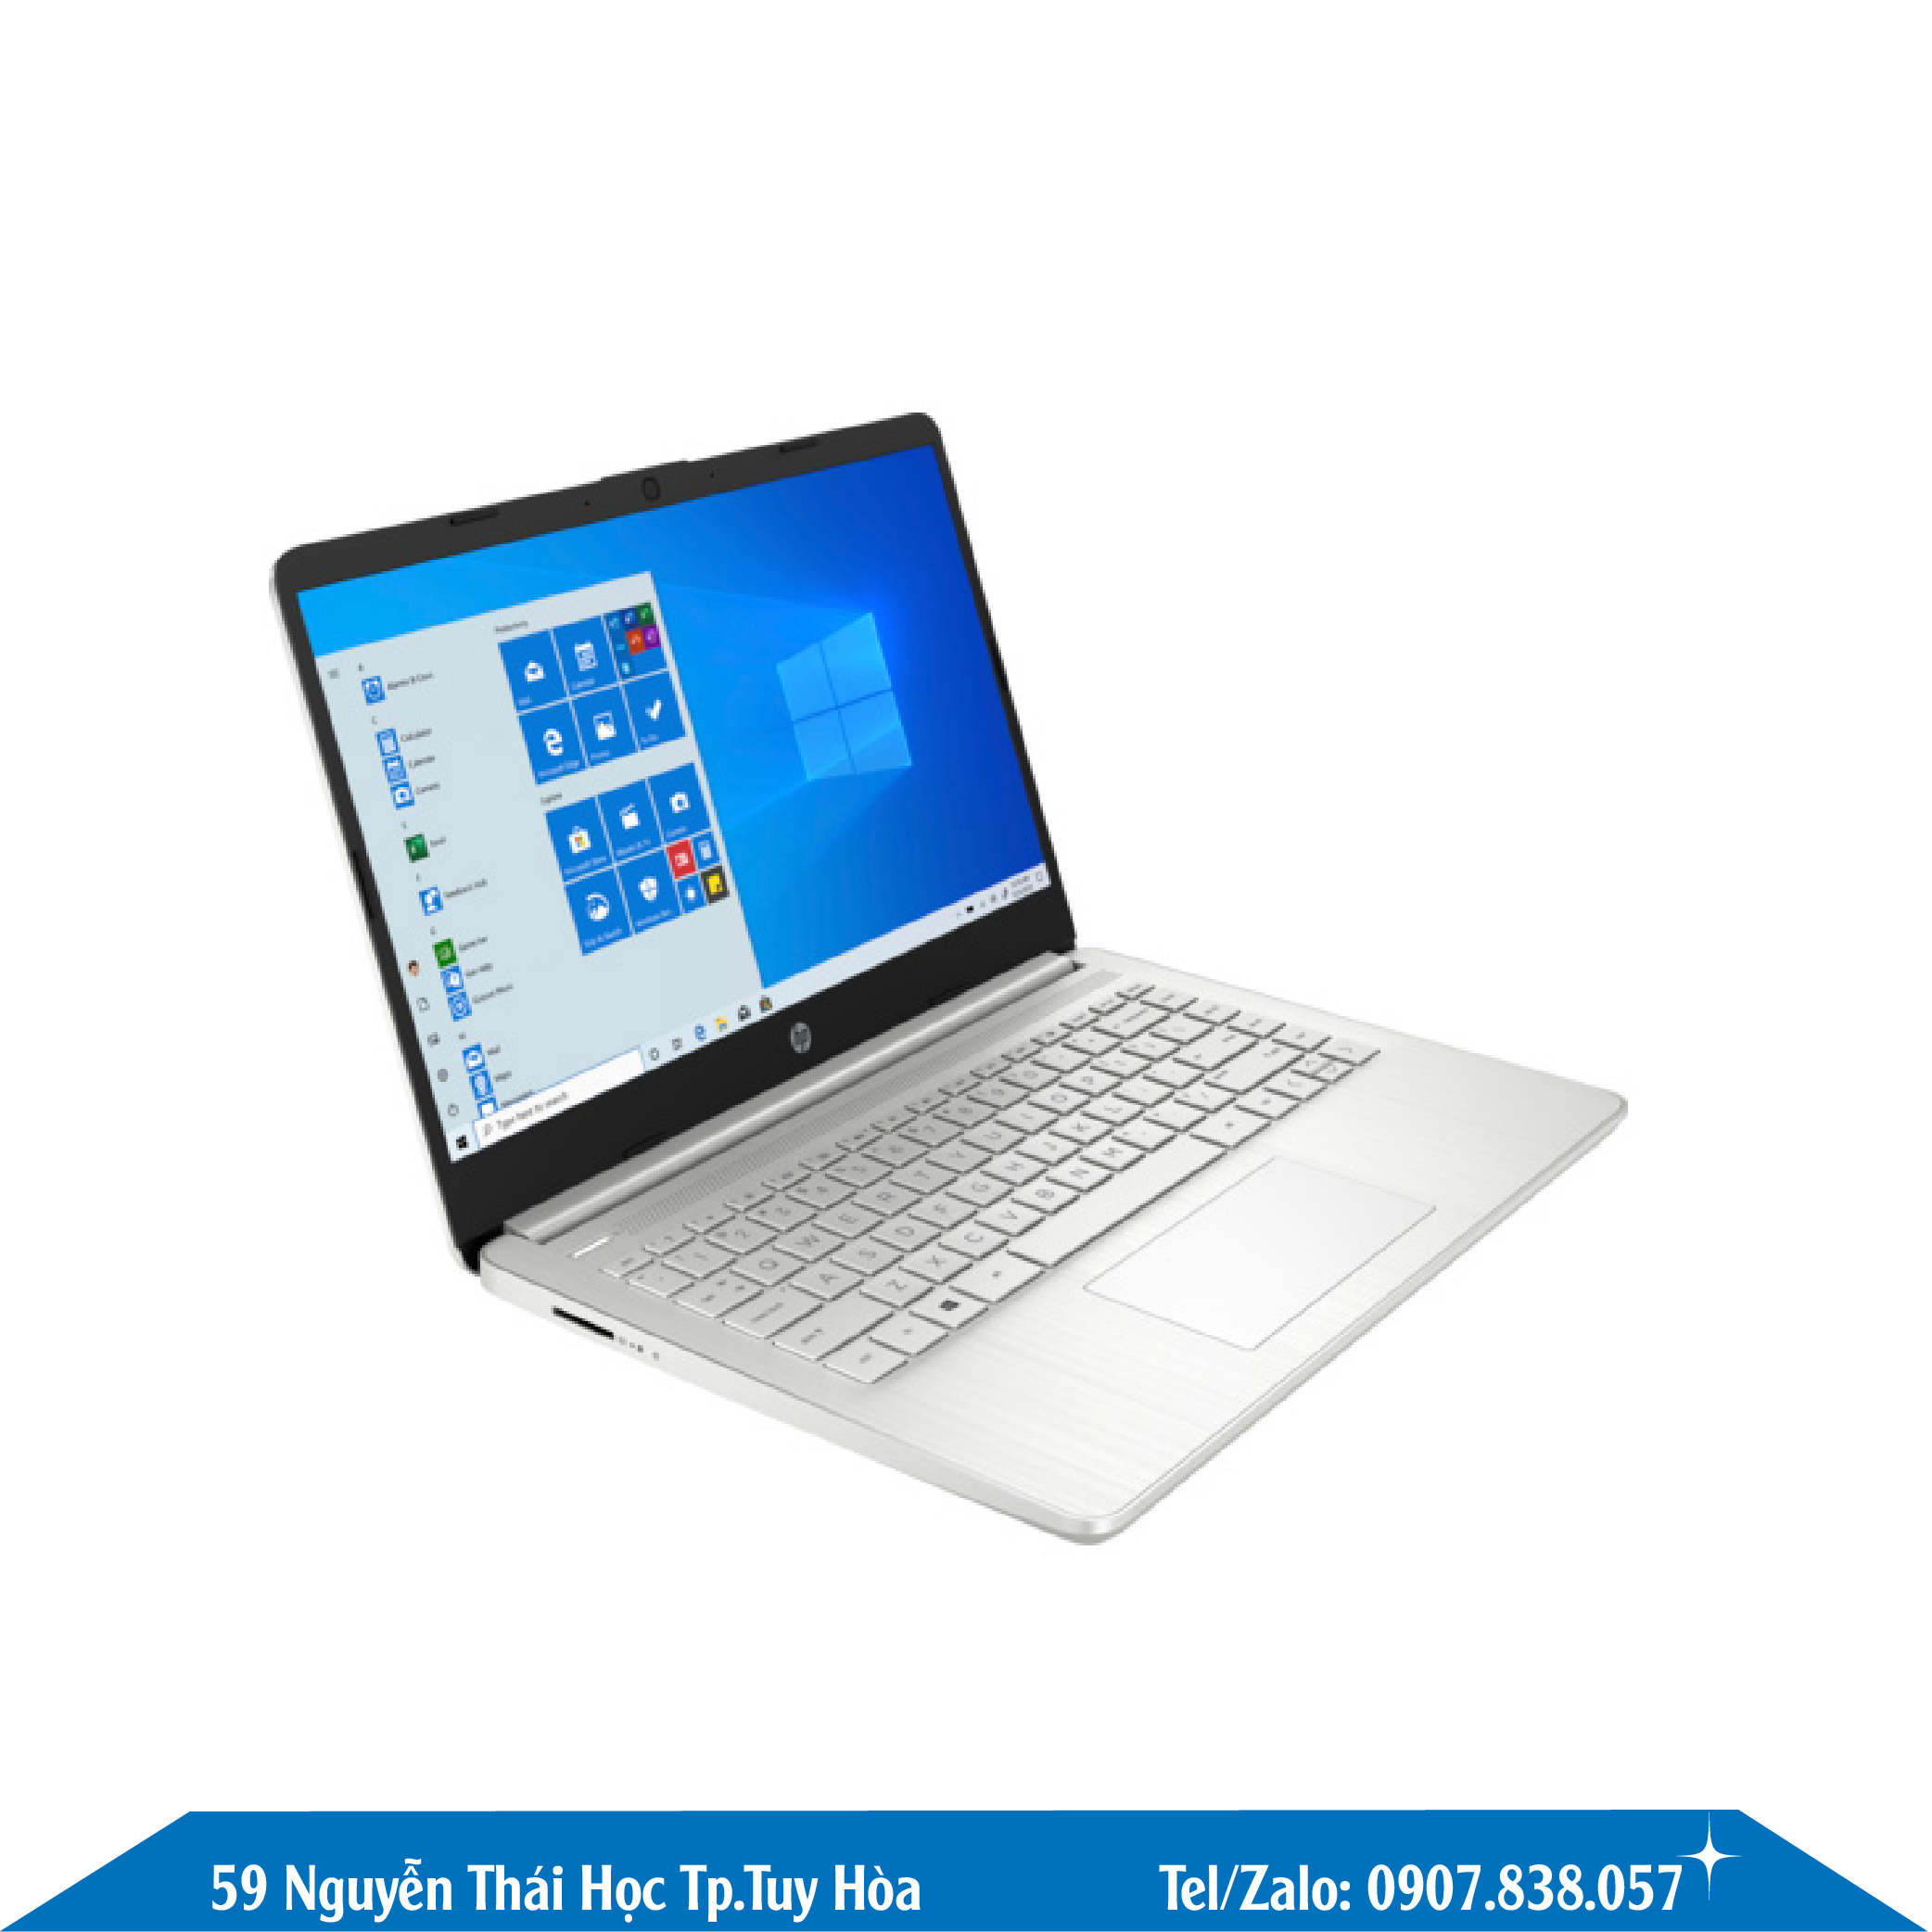 Laptop Hp 14-Dq2055Wm 39K15Ua I3-1115G4/ 4Gb Ram/256Gb Ssd